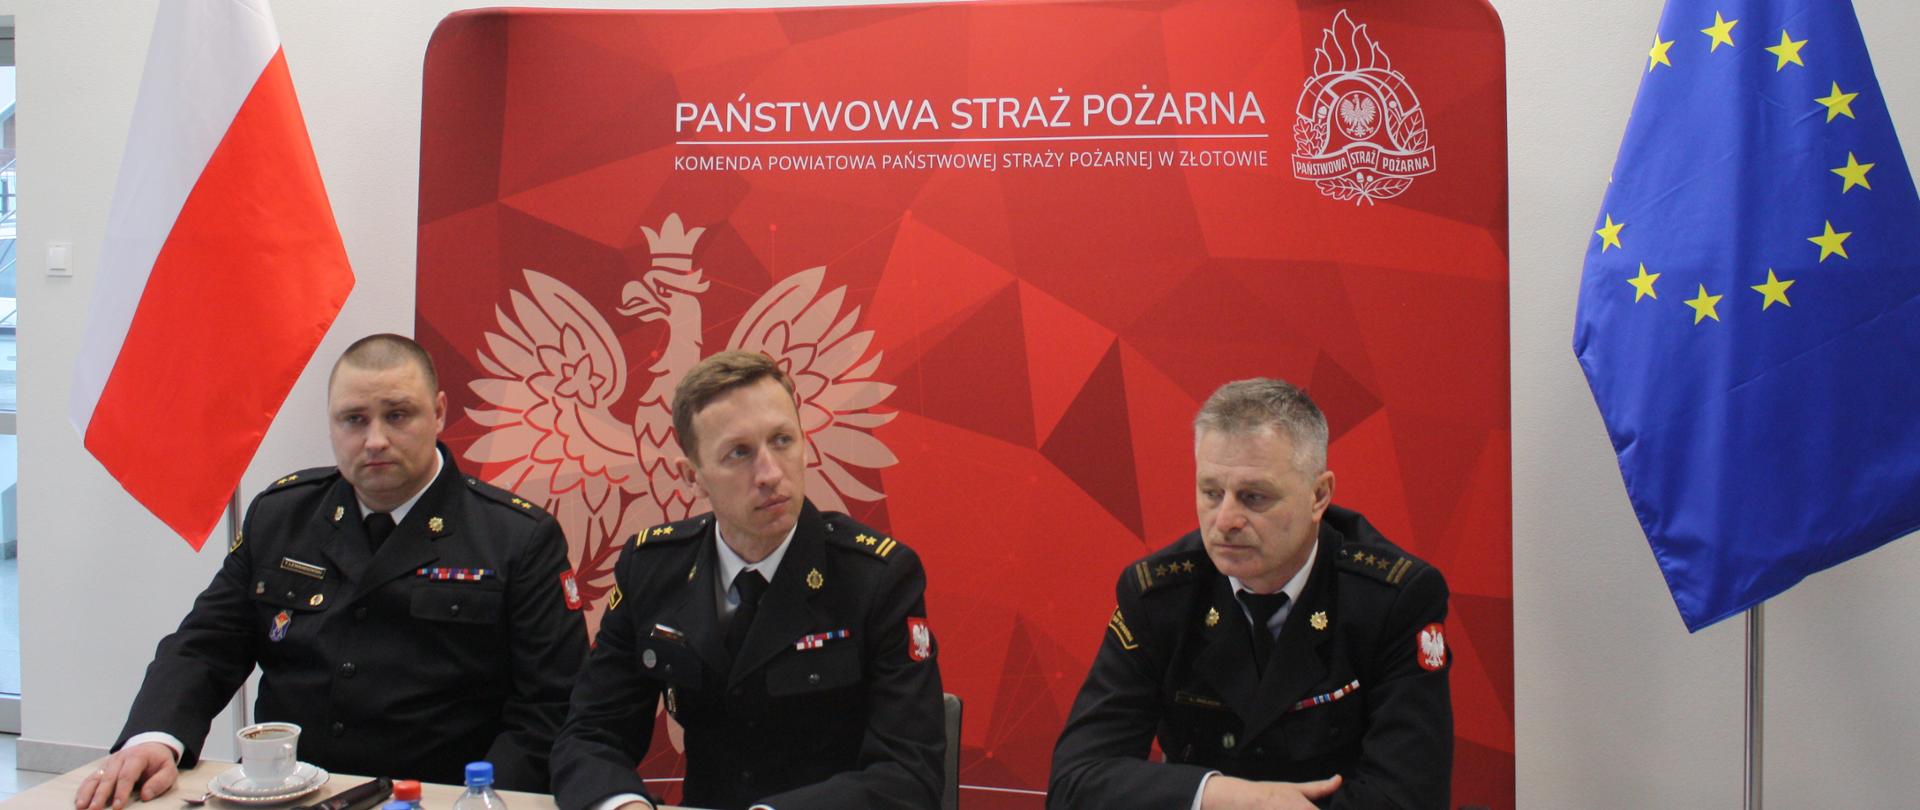 trzech strażaków - komendantów siedzi przy stole, za nimi ścianka tekstylna z czerwonym tłem , logo PSP i napisem państwowa straż pożarna, z lewej strony ścianki stoi biało czerwona flaga, z prawej strony niebieska z gwiazdkami , flaga unii europejskiej